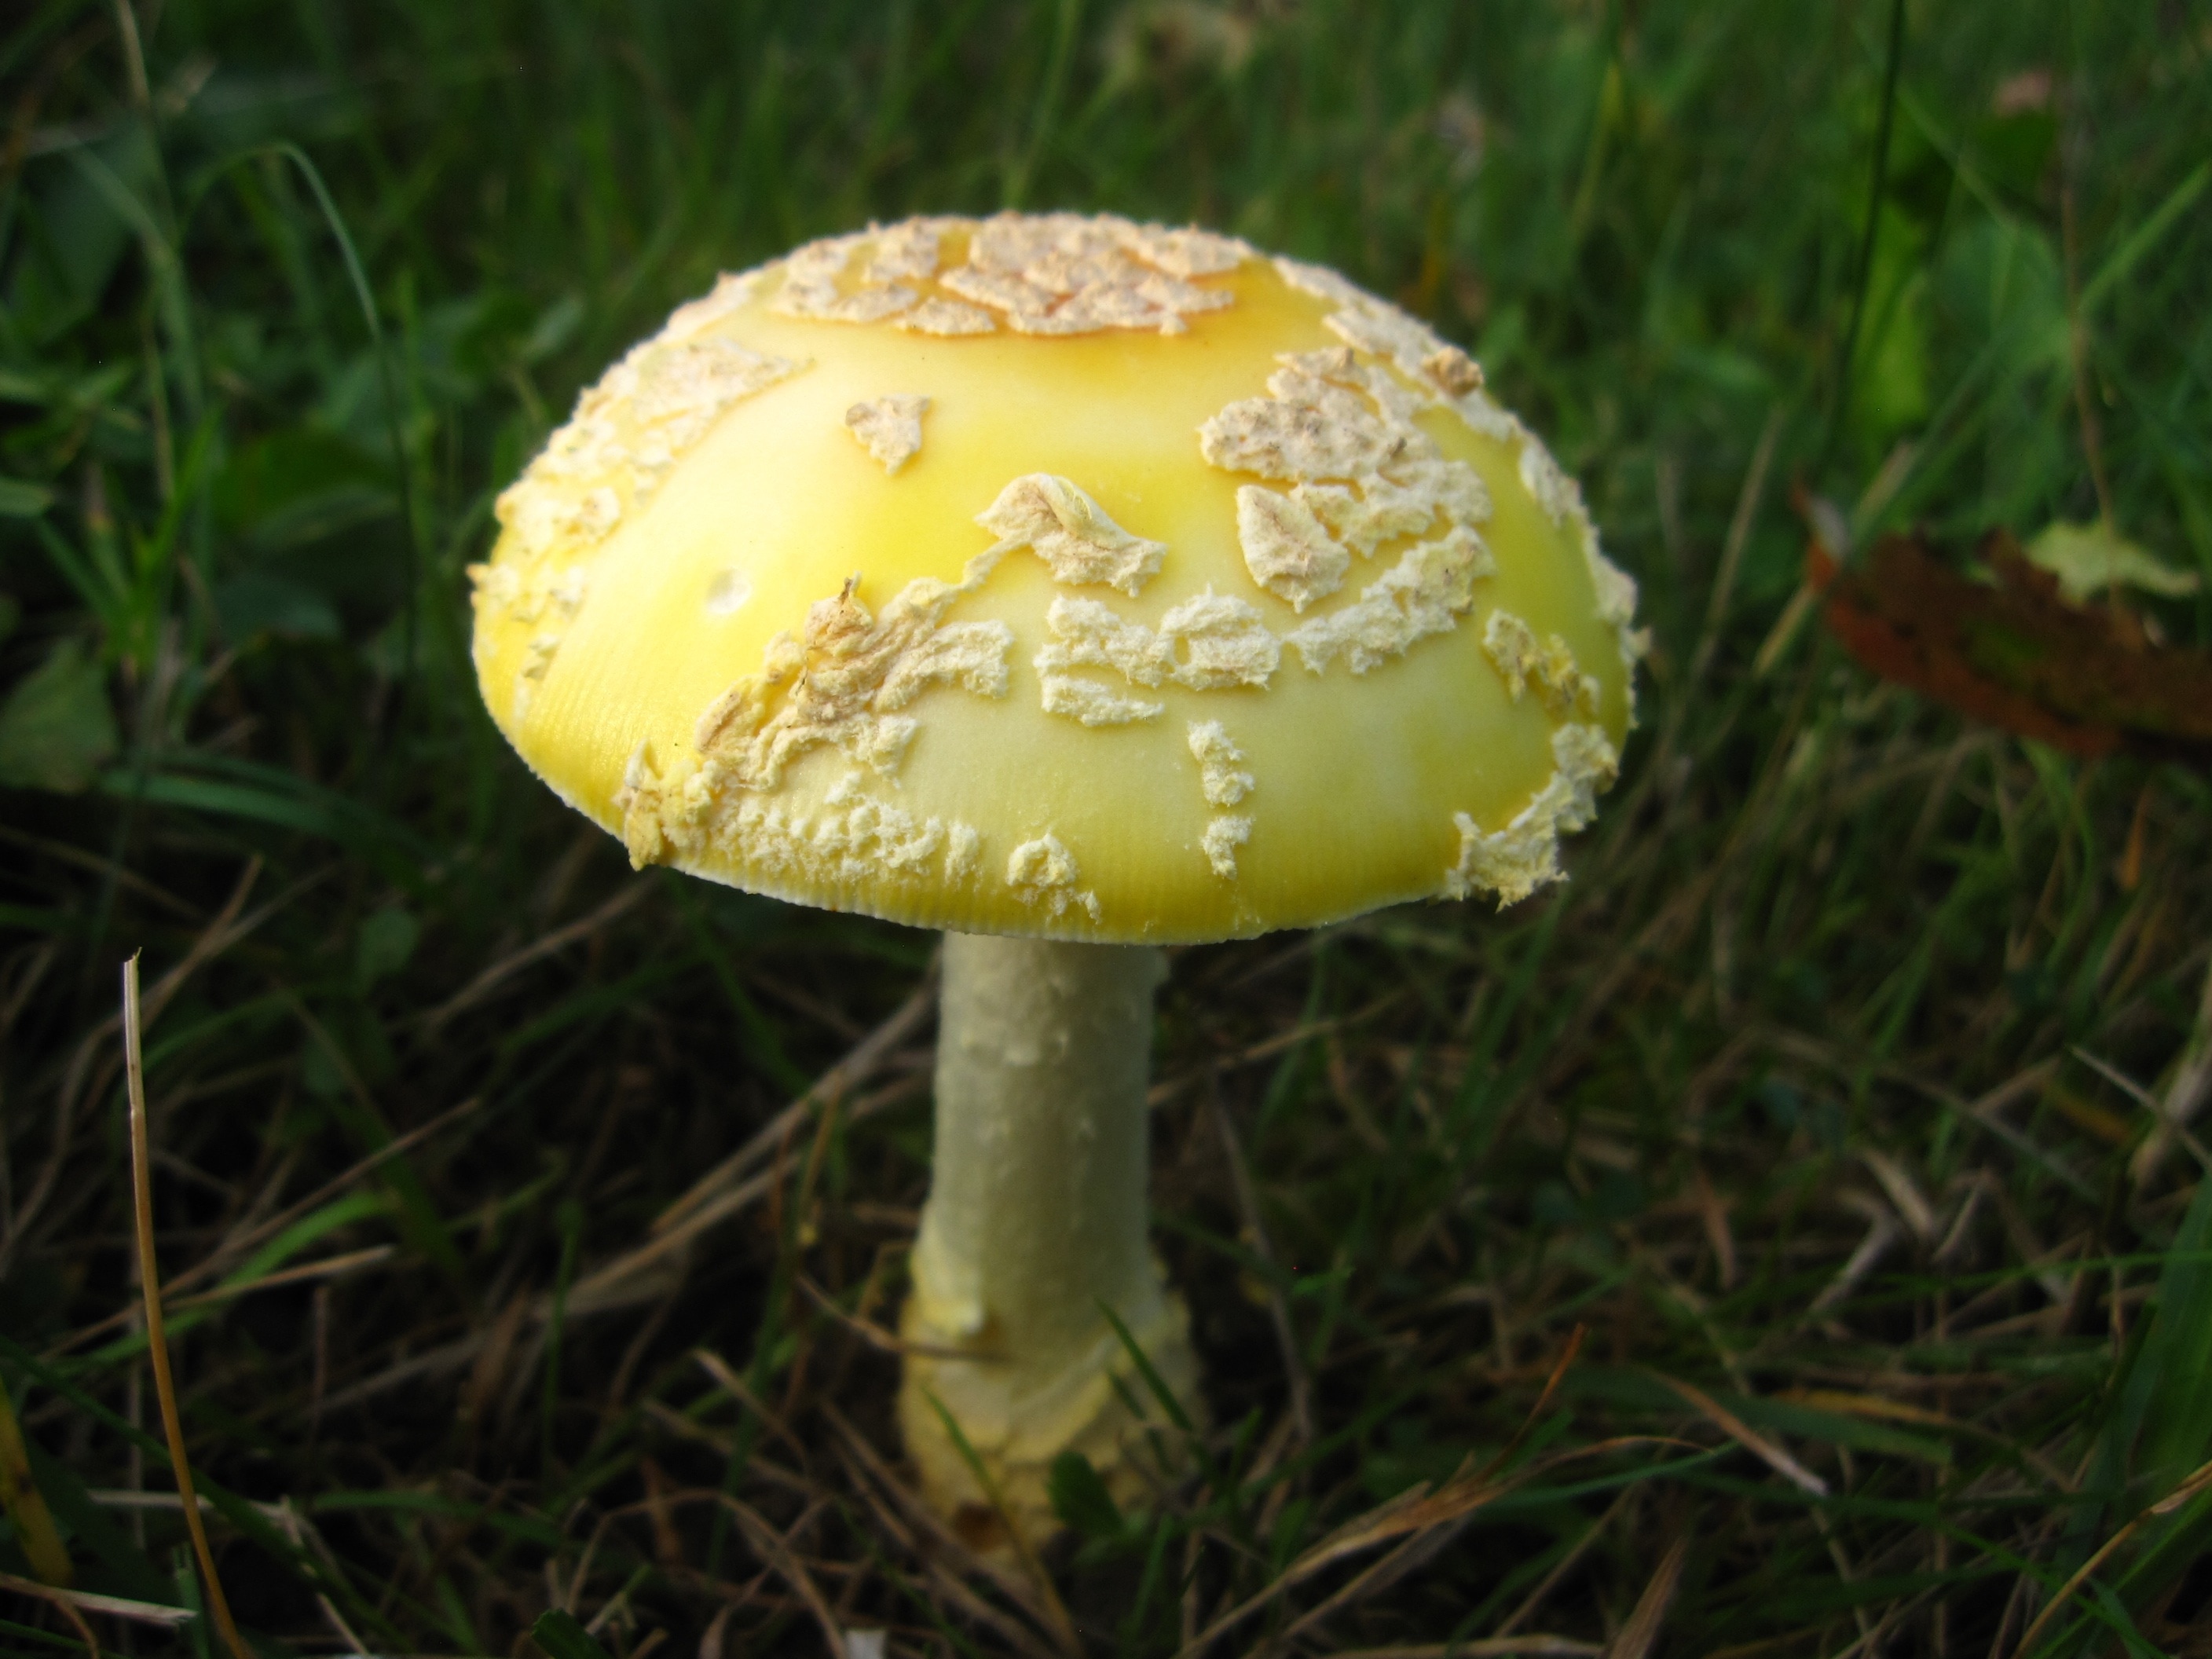 yellow and white mushroom